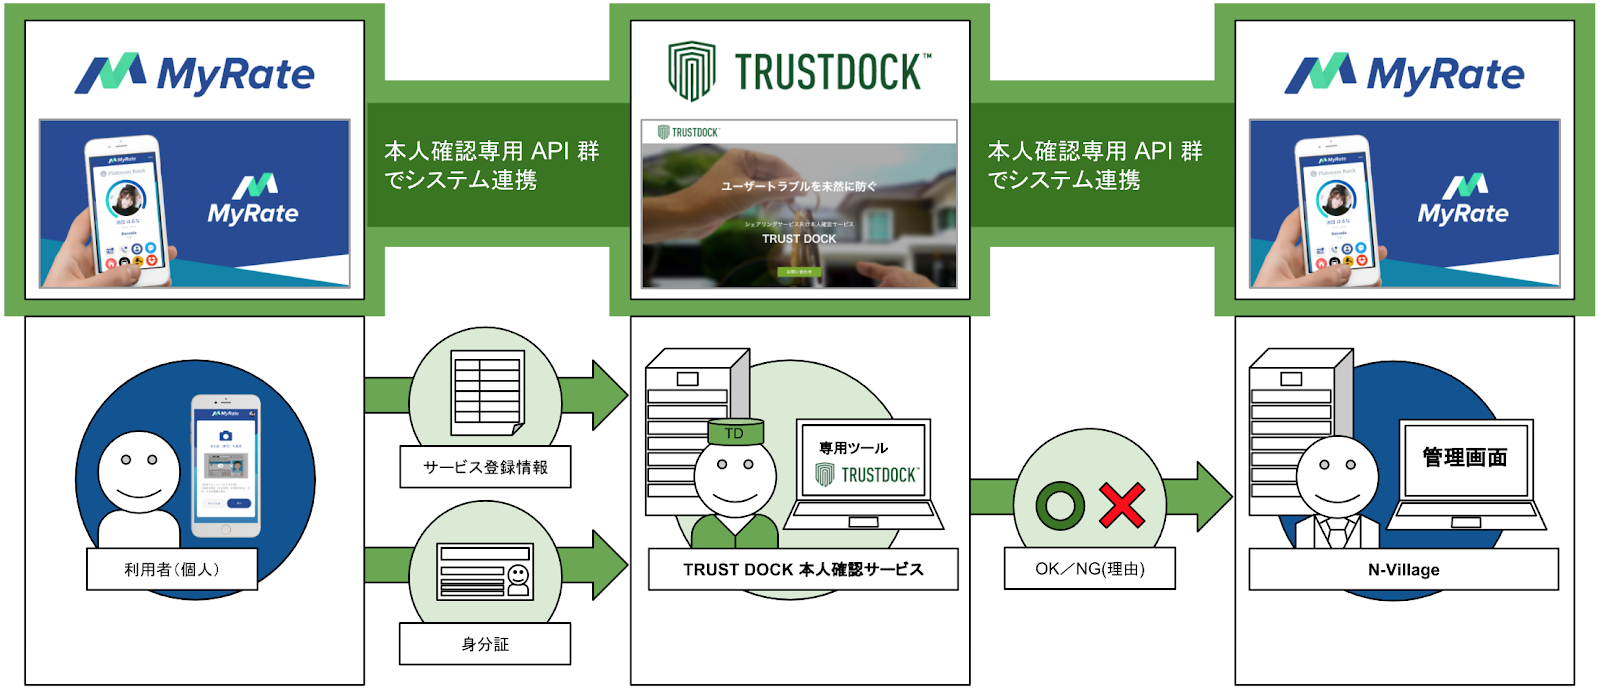 ガイアックス、N-Villageが開発・展開する個人間オンライン取引の信用情報蓄積サービス「MyRate」に「TRUSTDOCK」を導入実施